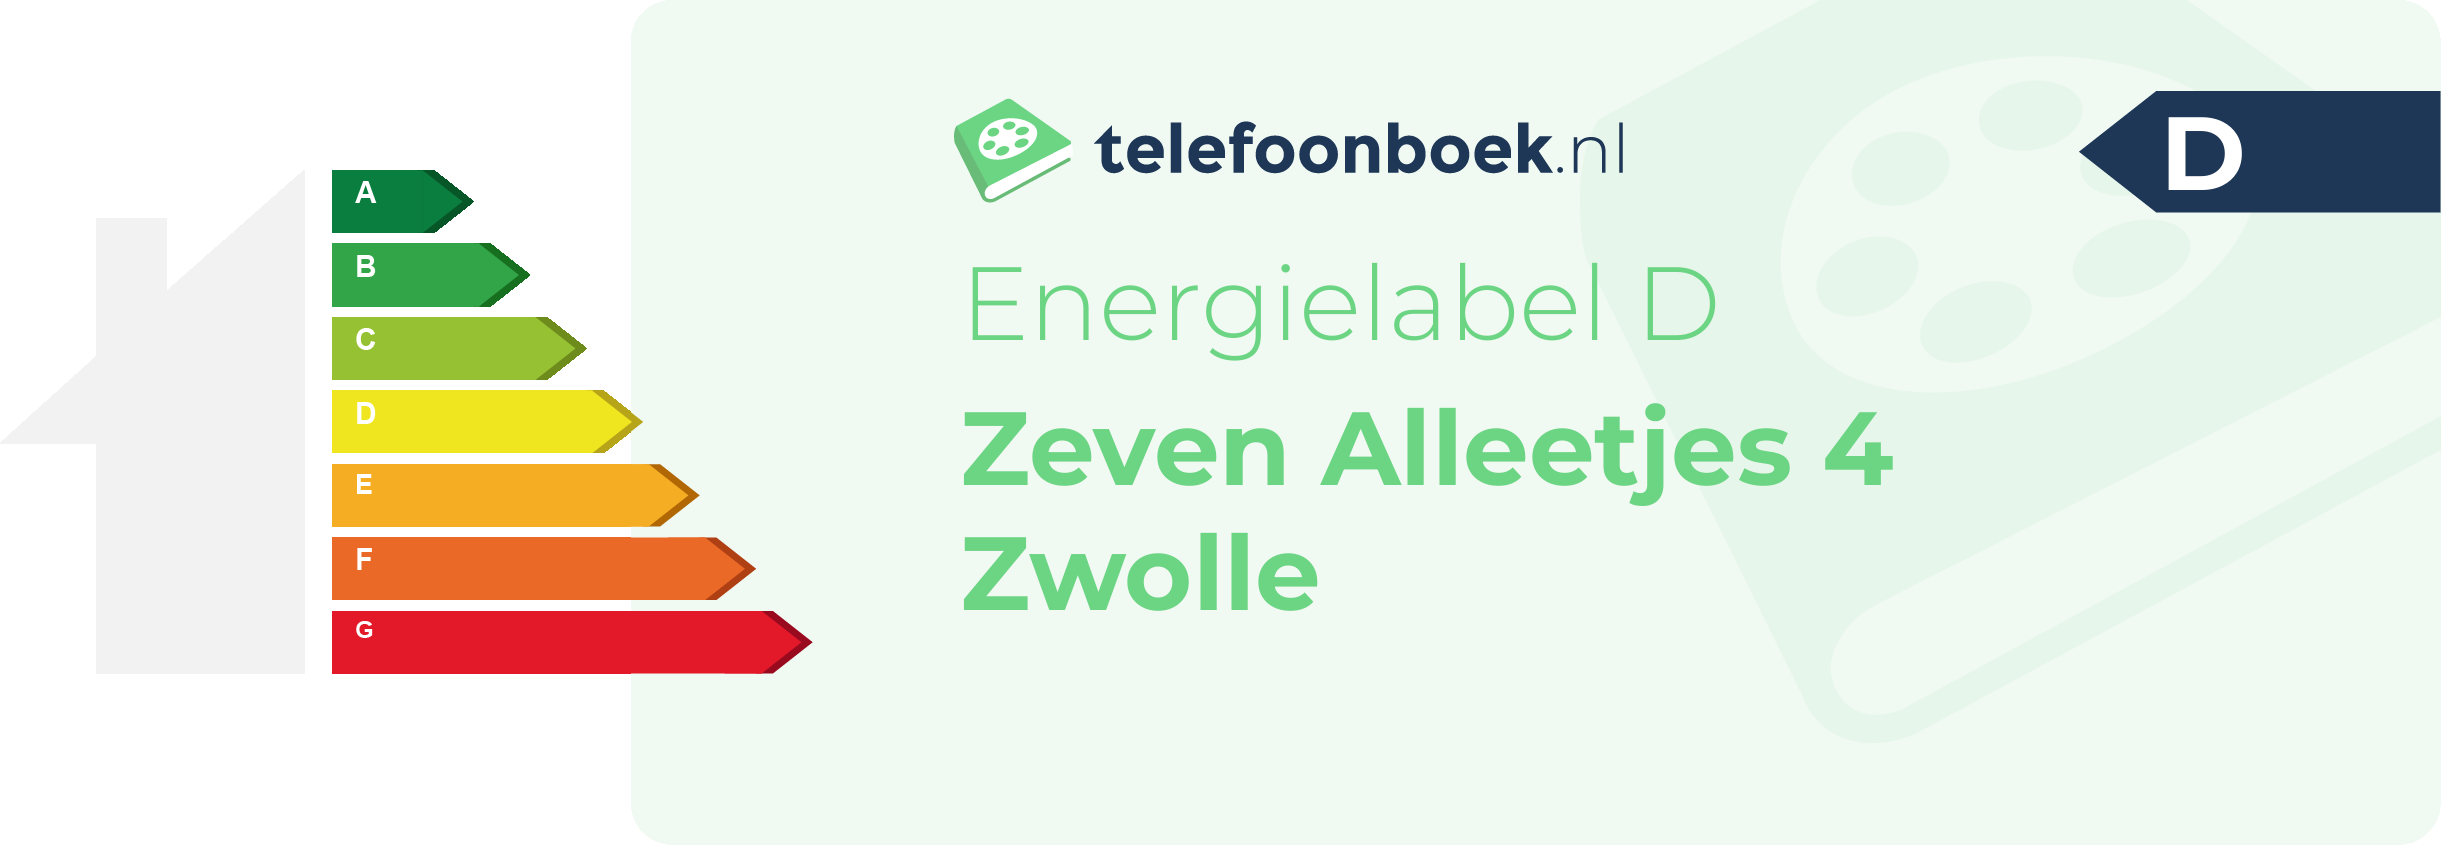 Energielabel Zeven Alleetjes 4 Zwolle